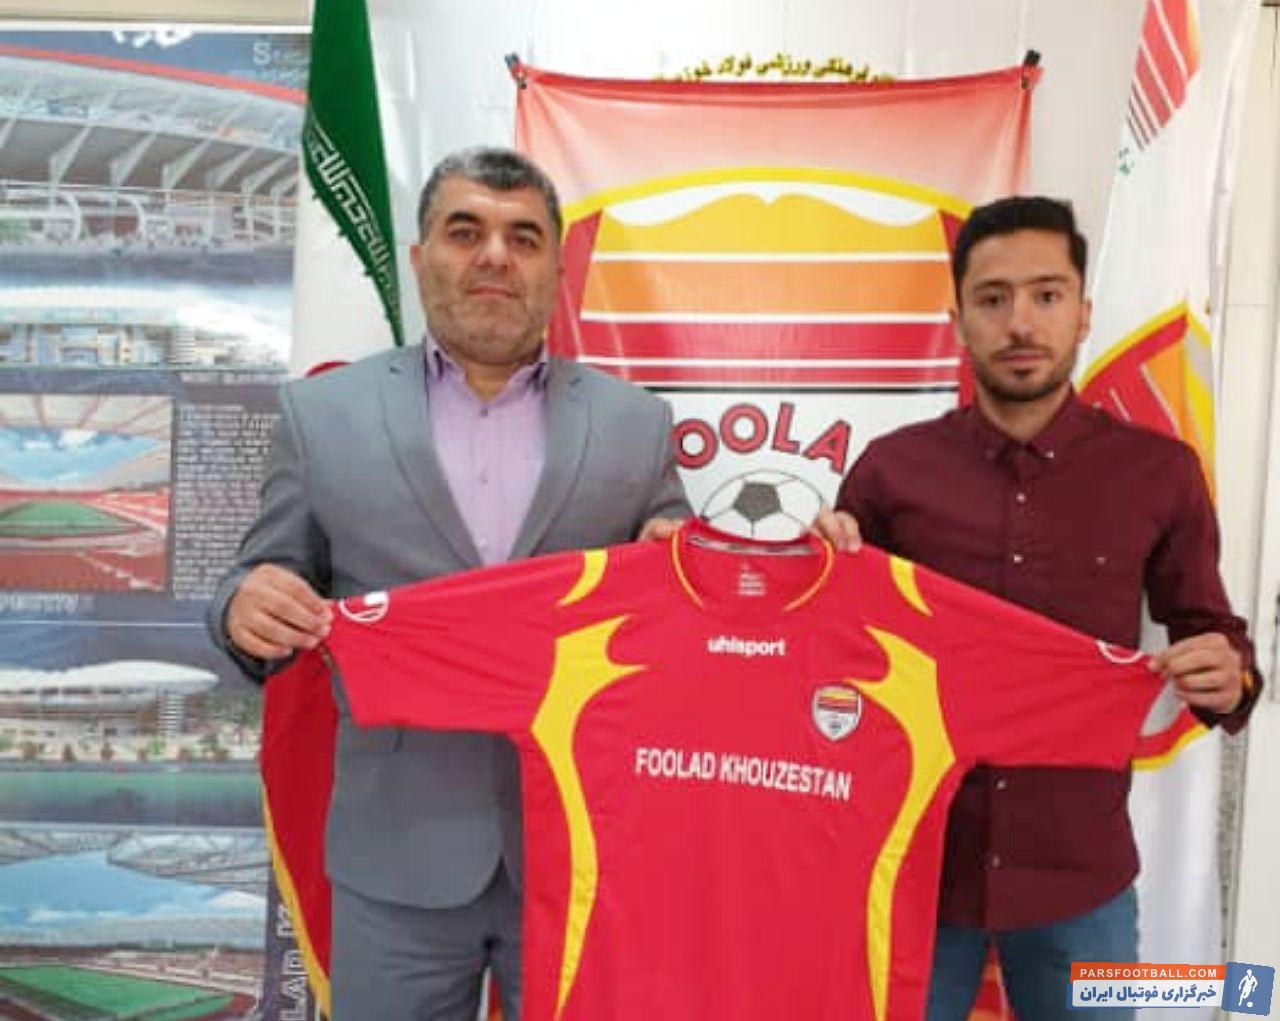 علی اصغر عاشوری در گذشته سابقه بازی در فولاد را داشت دوباره به این تیم بازگشت علی اصغر عاشوری پس از توافق نهایی به صورت رسمی قرارداد امضا کرد.